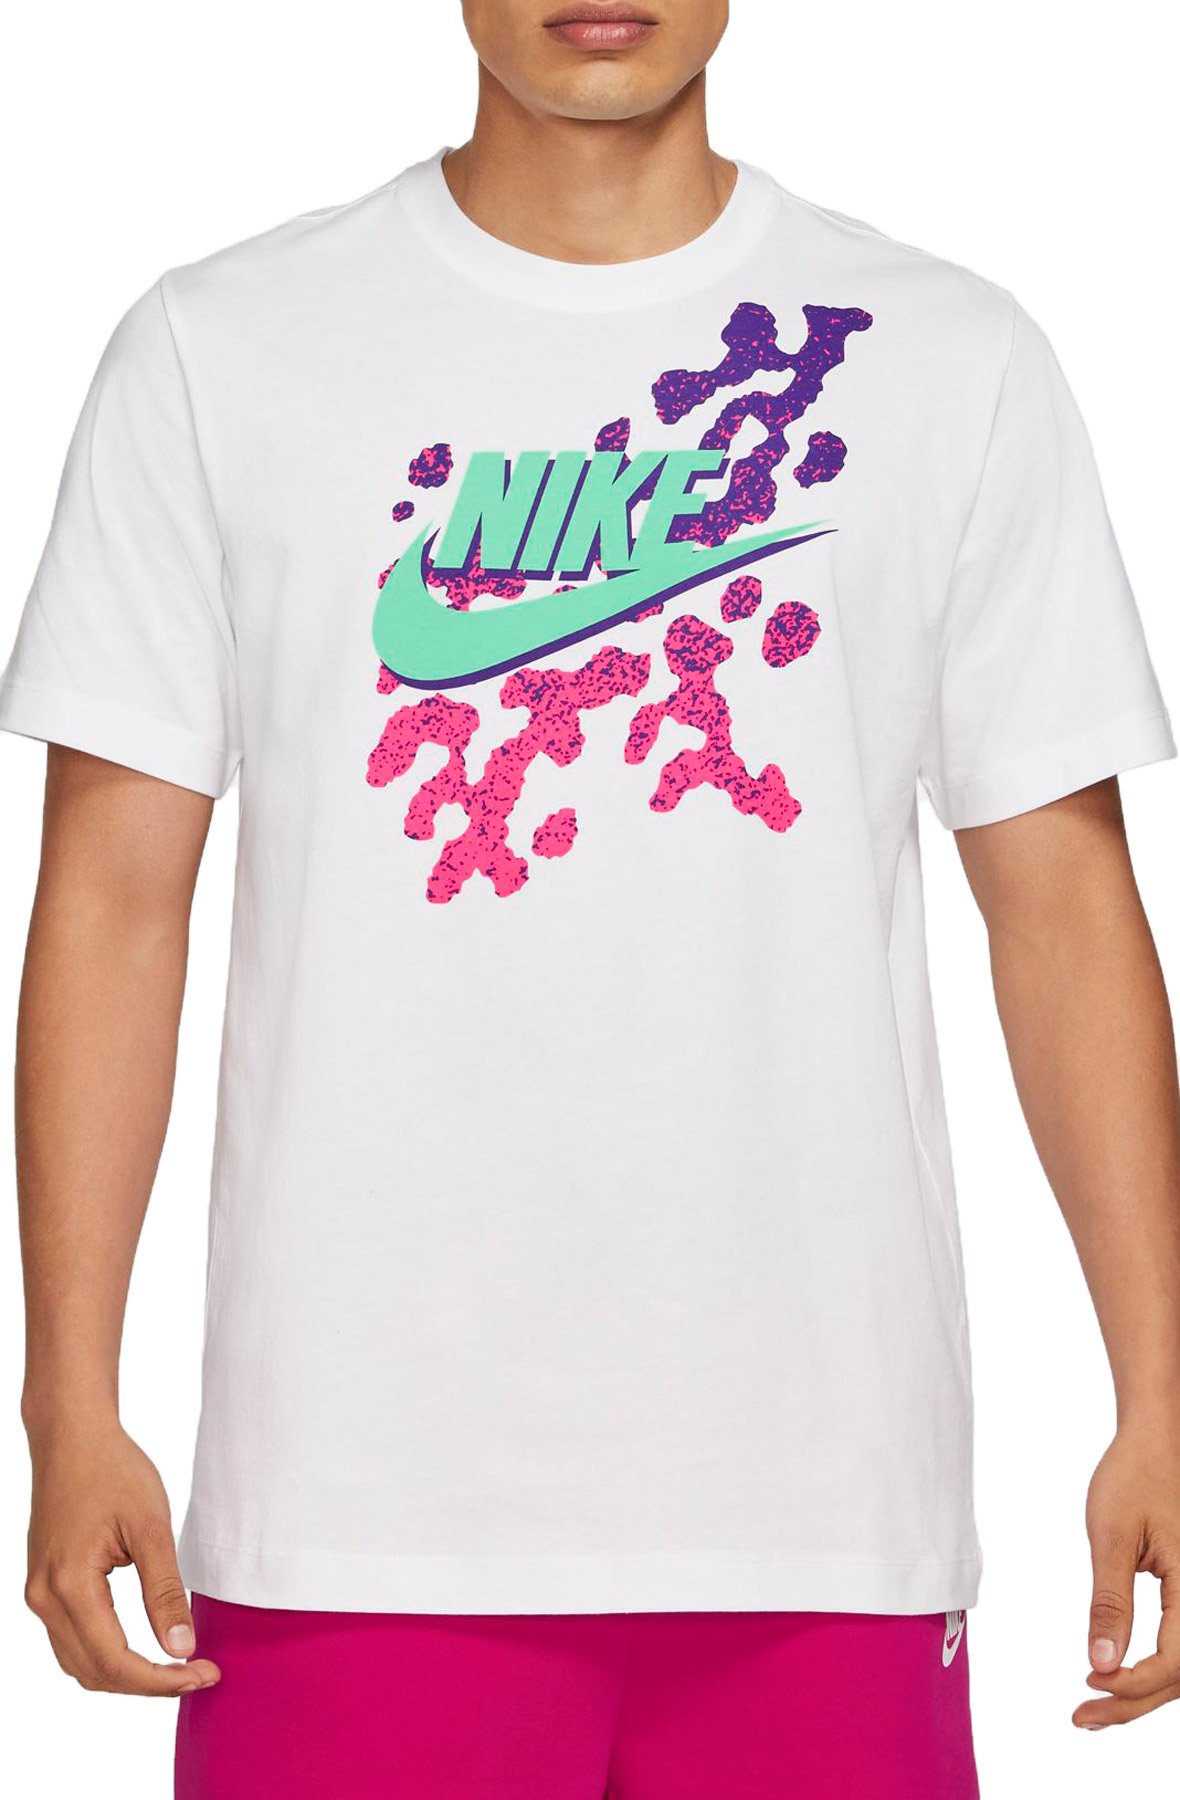 T-shirt femme Nike Air - Femme - Beach